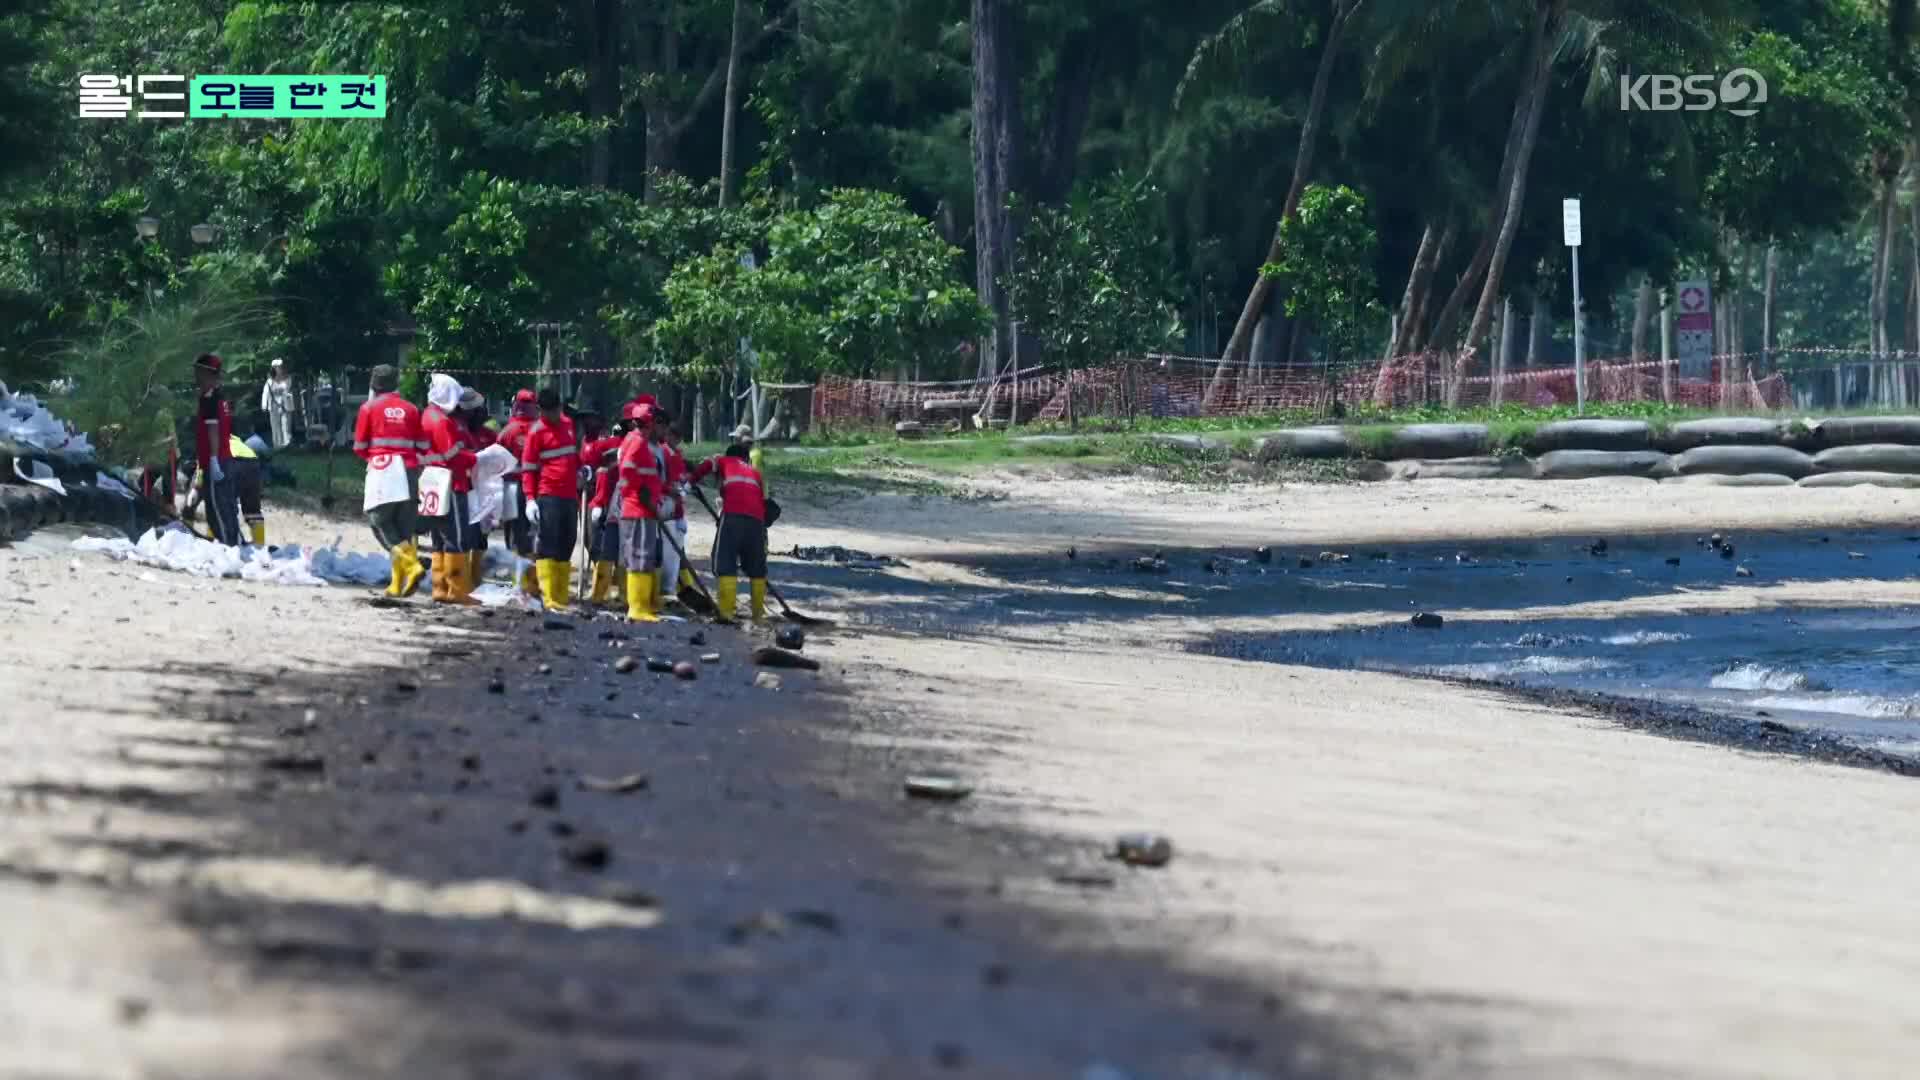 [오늘 한 컷] 기름 범벅된 바다, 소리 없는 희생자